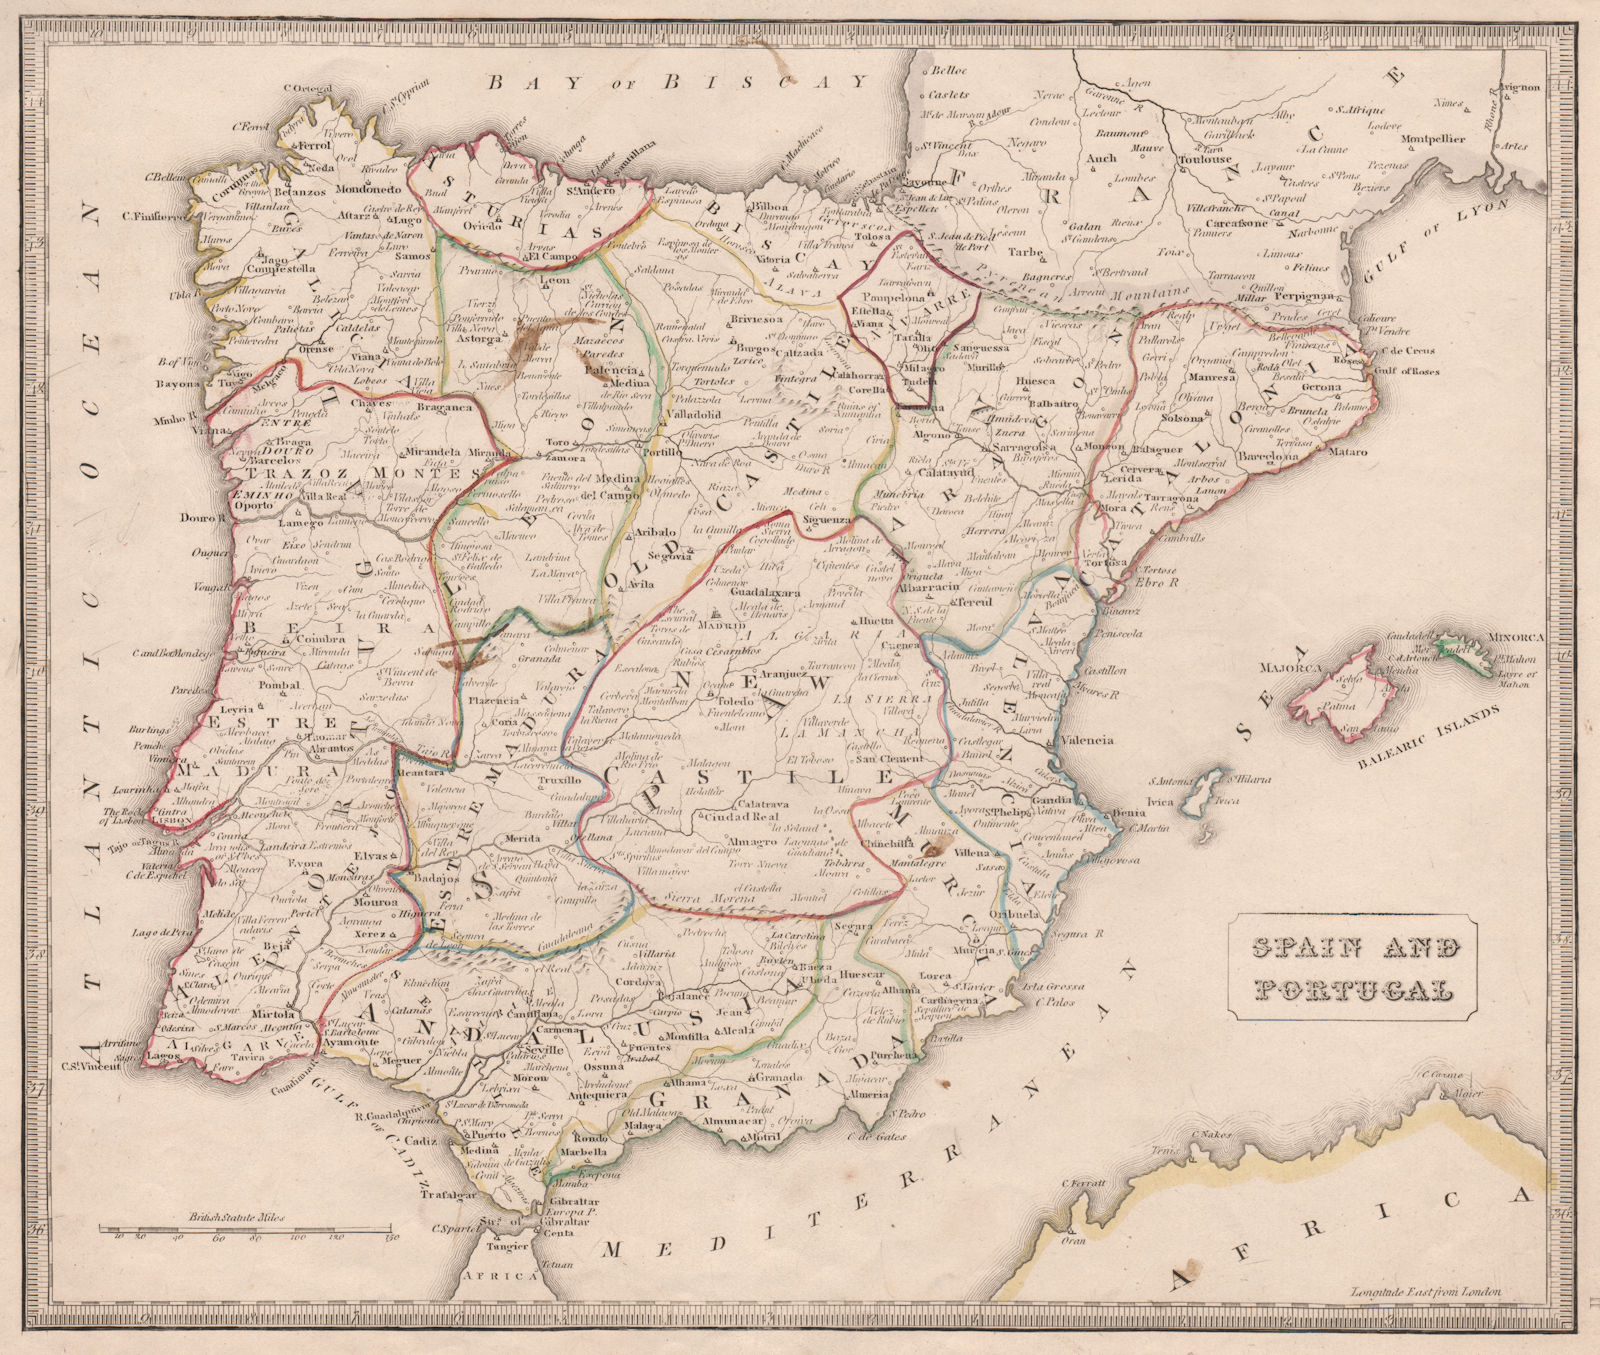 SPAIN & PORTUGAL. Provinces rivers key towns. Original colour. JOHNSON 1850 map